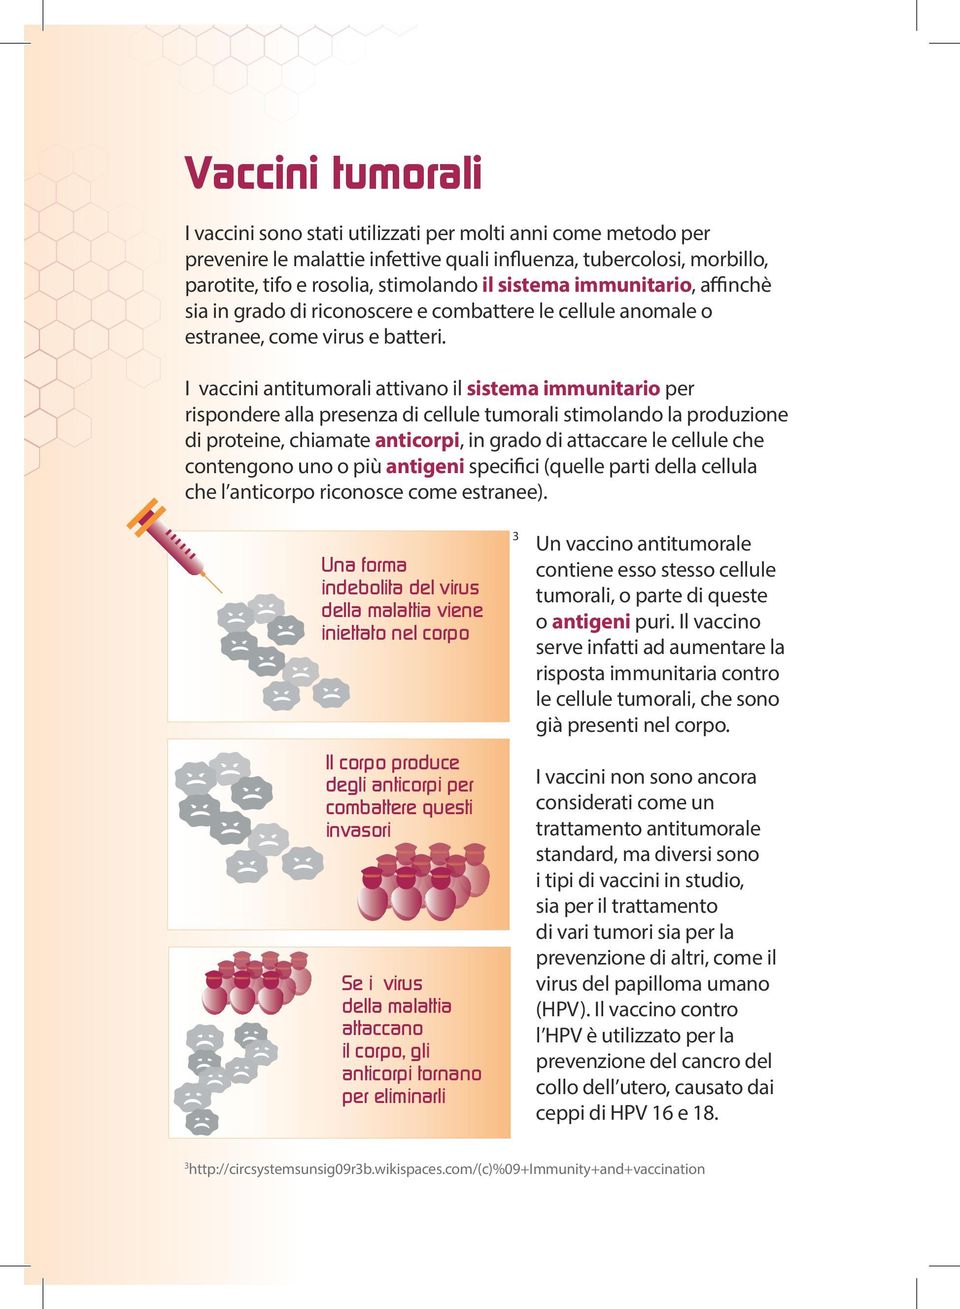 I vaccini antitumorali attivano il sistema immunitario per rispondere alla presenza di cellule tumorali stimolando la produzione di proteine, chiamate anticorpi, in grado di attaccare le cellule che